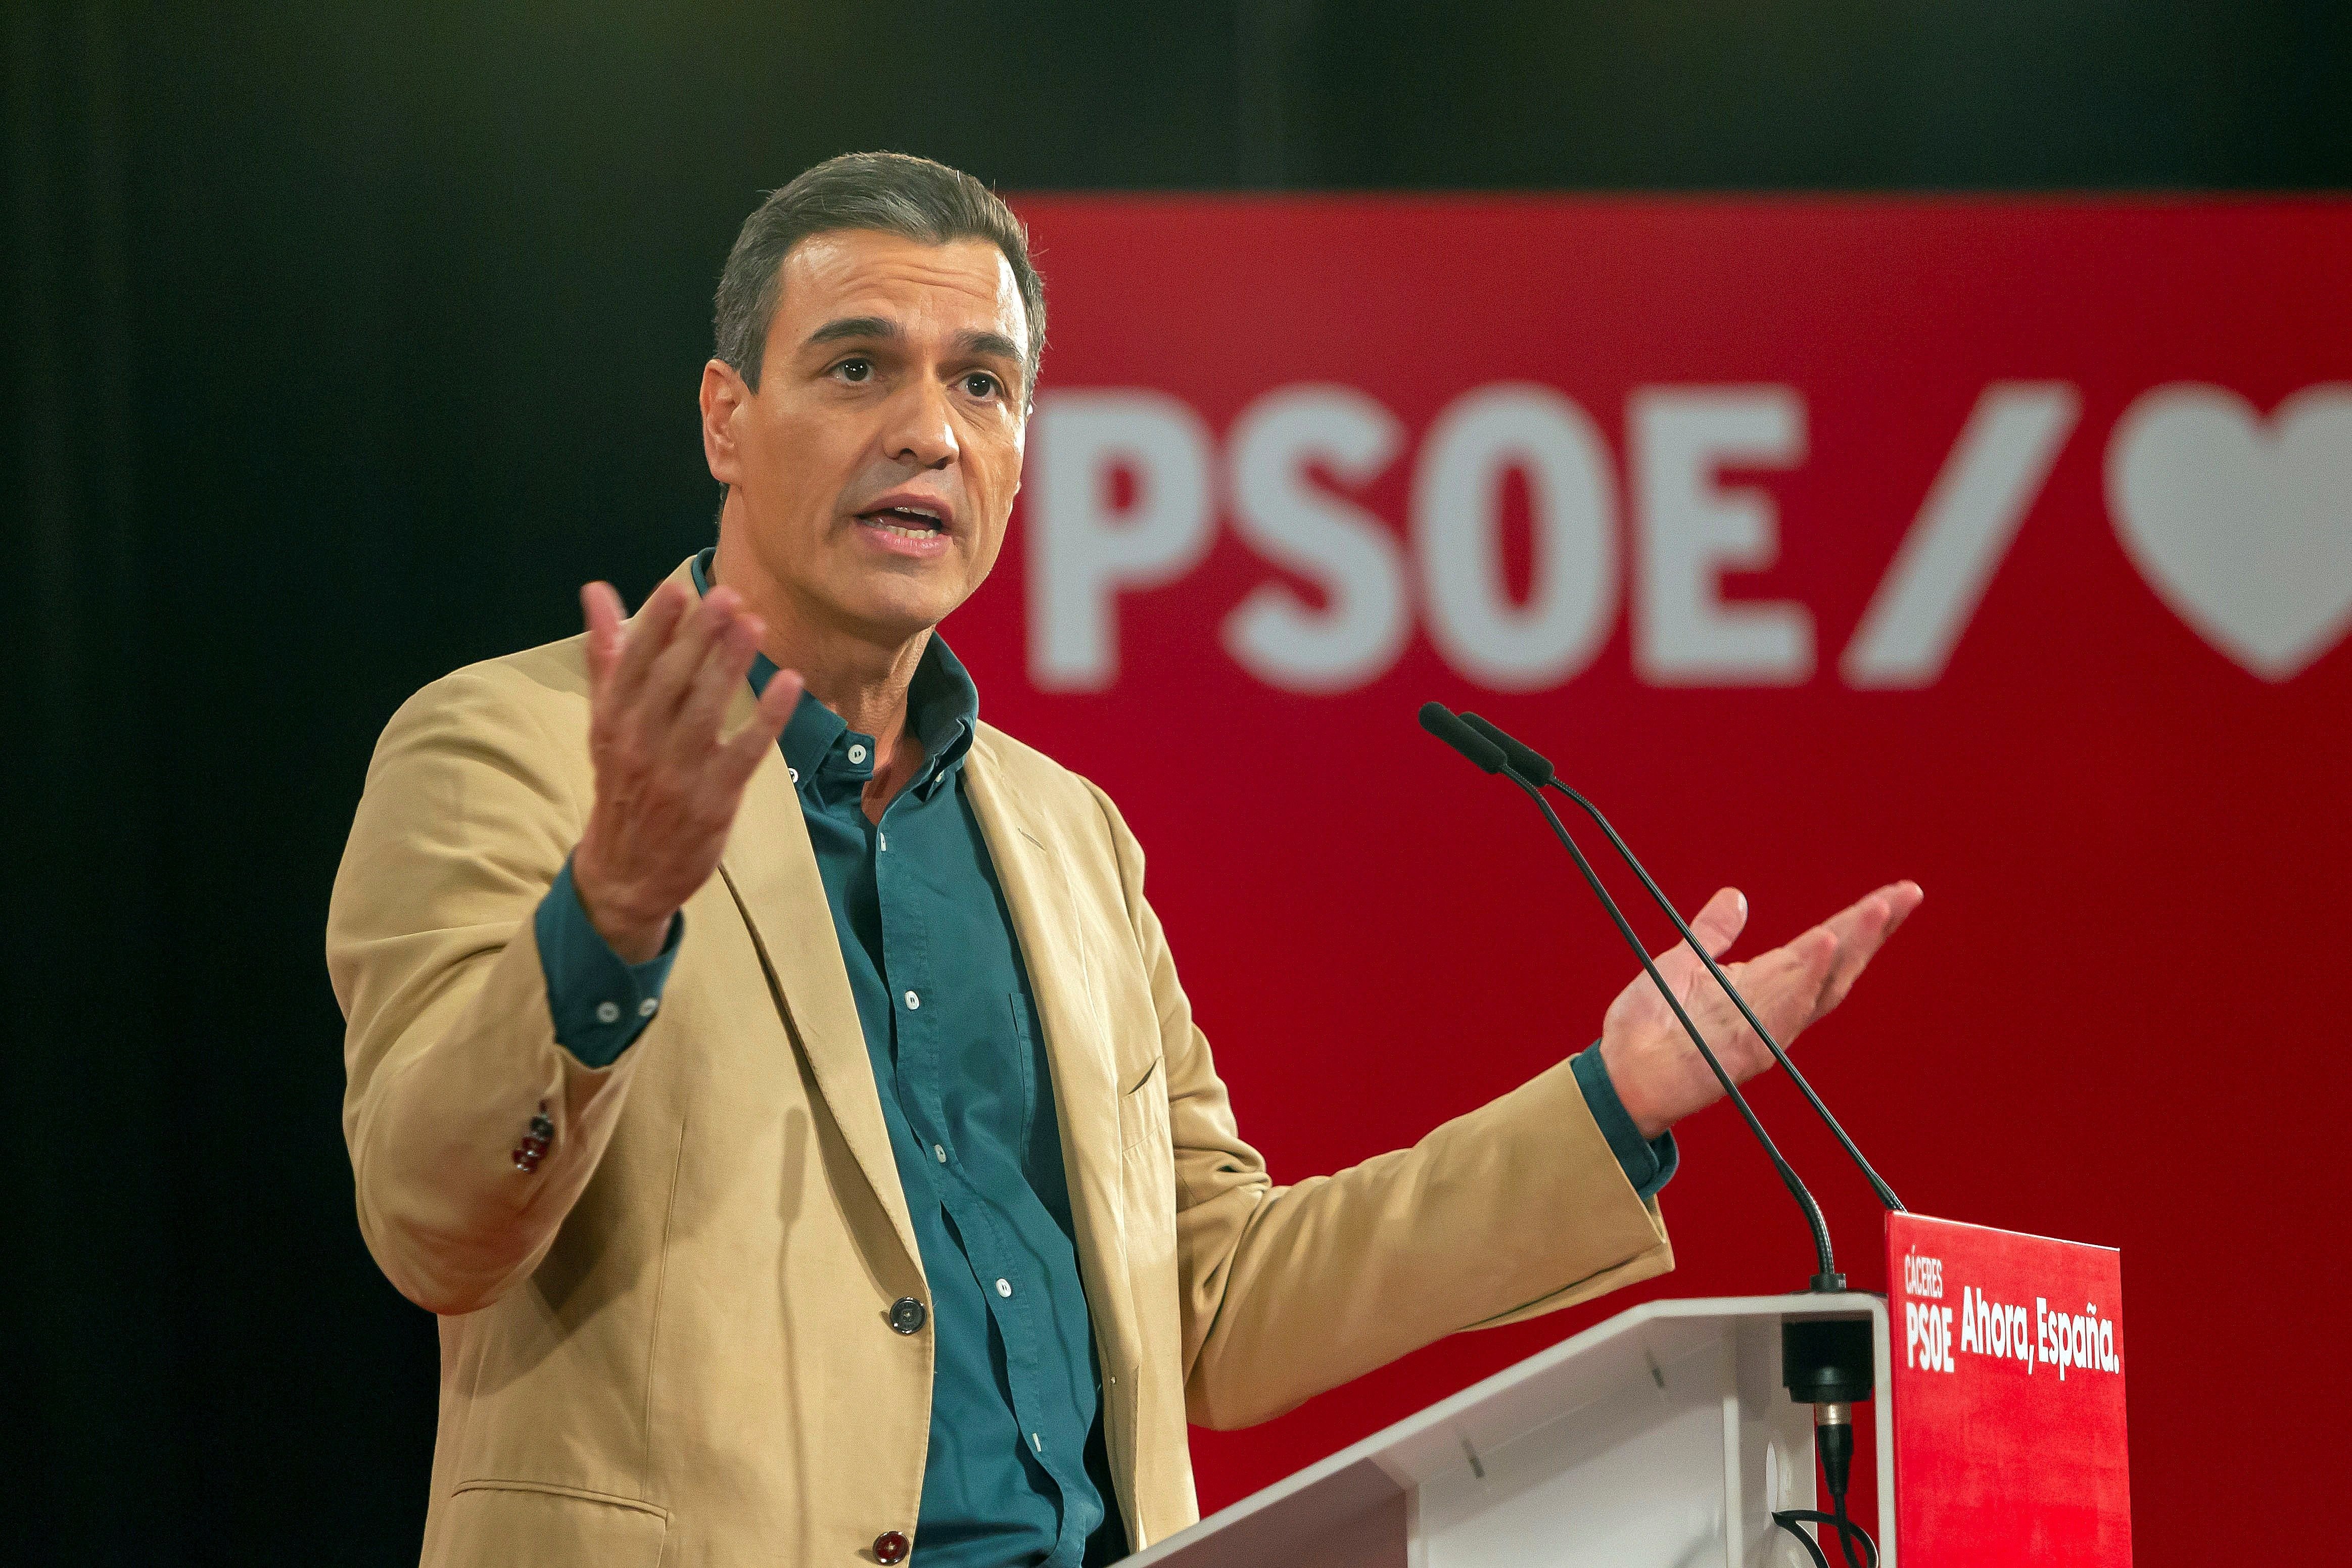 ¿Crees que el independentismo ha fracasado como dice Pedro Sánchez?